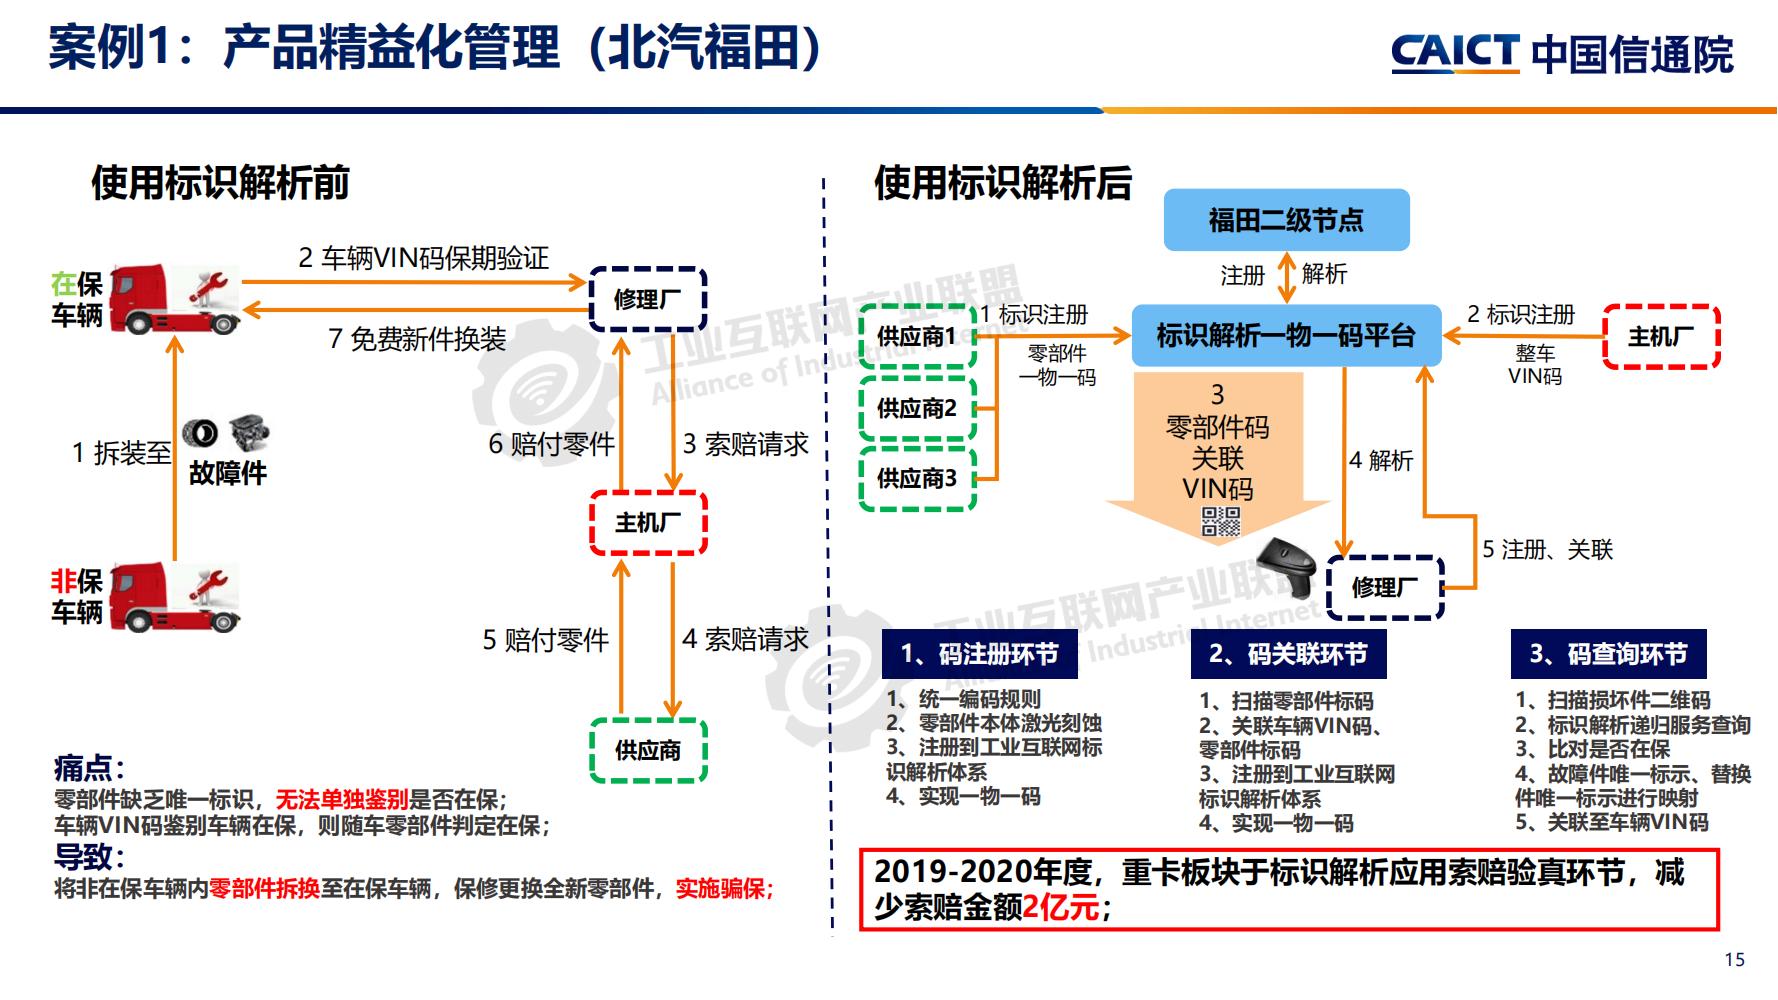 4-betway体育亚洲版入口标识解析体系建设进展（深圳）12-16(1)-水印_14.jpg